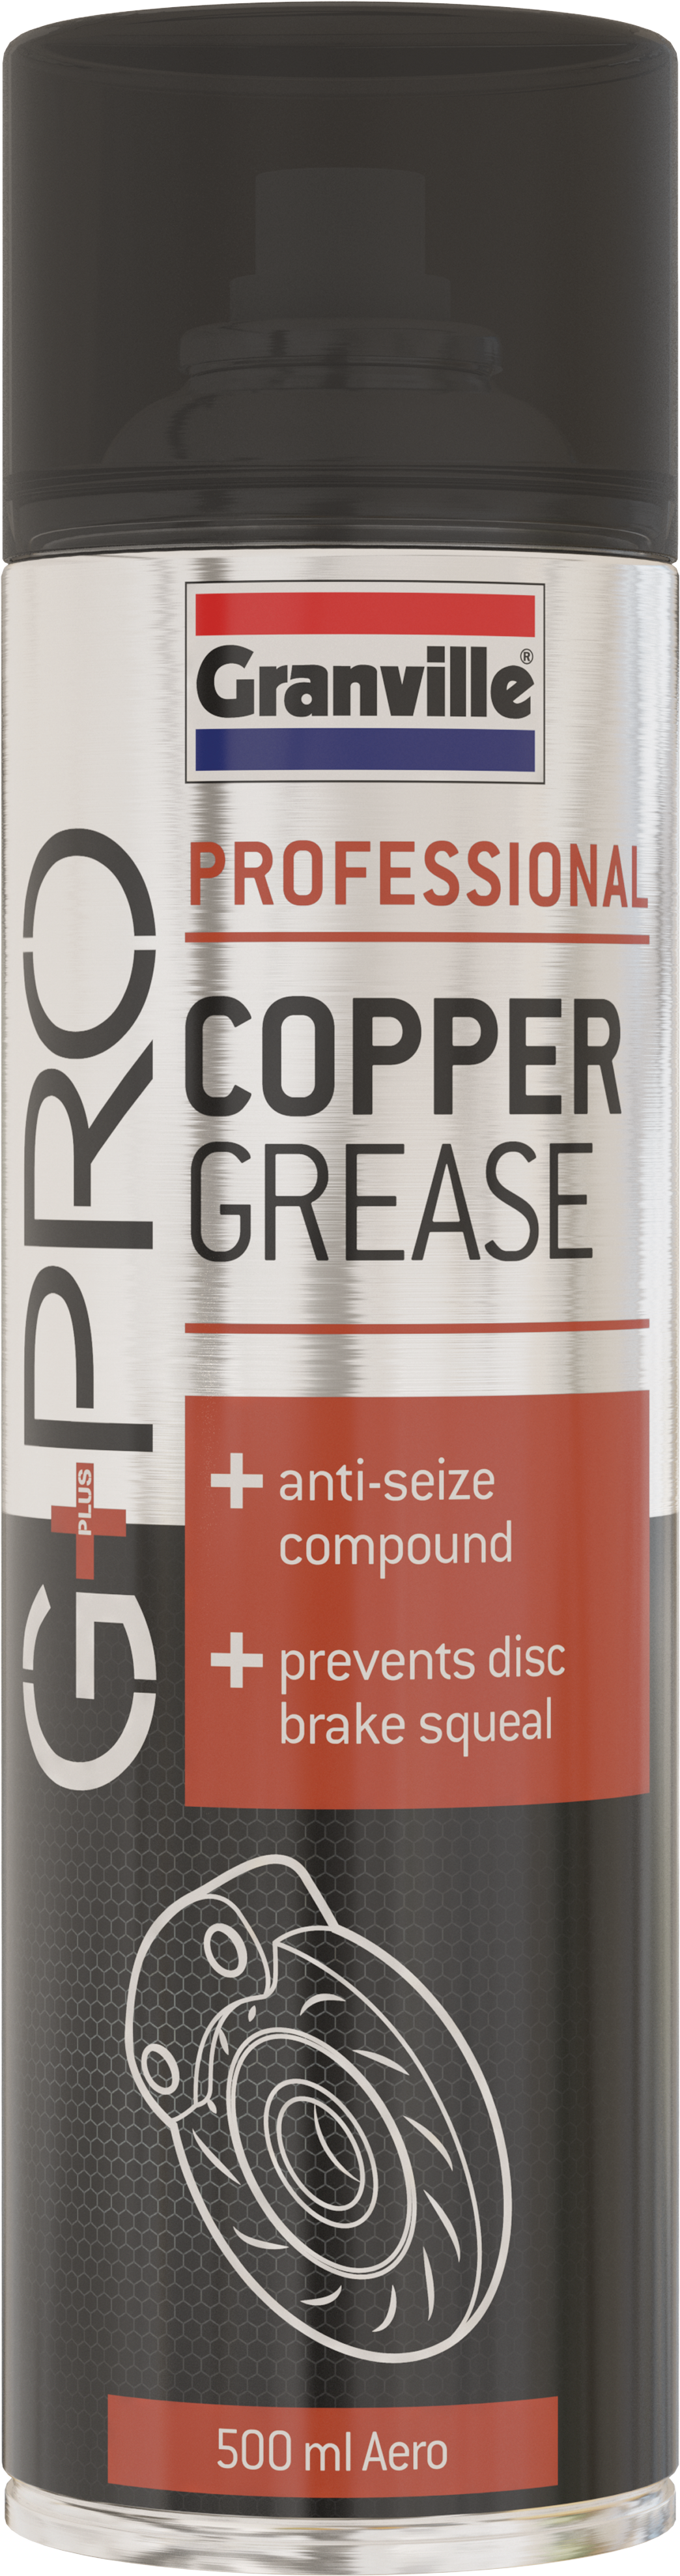 Granville Copper Grease Spray 500ml